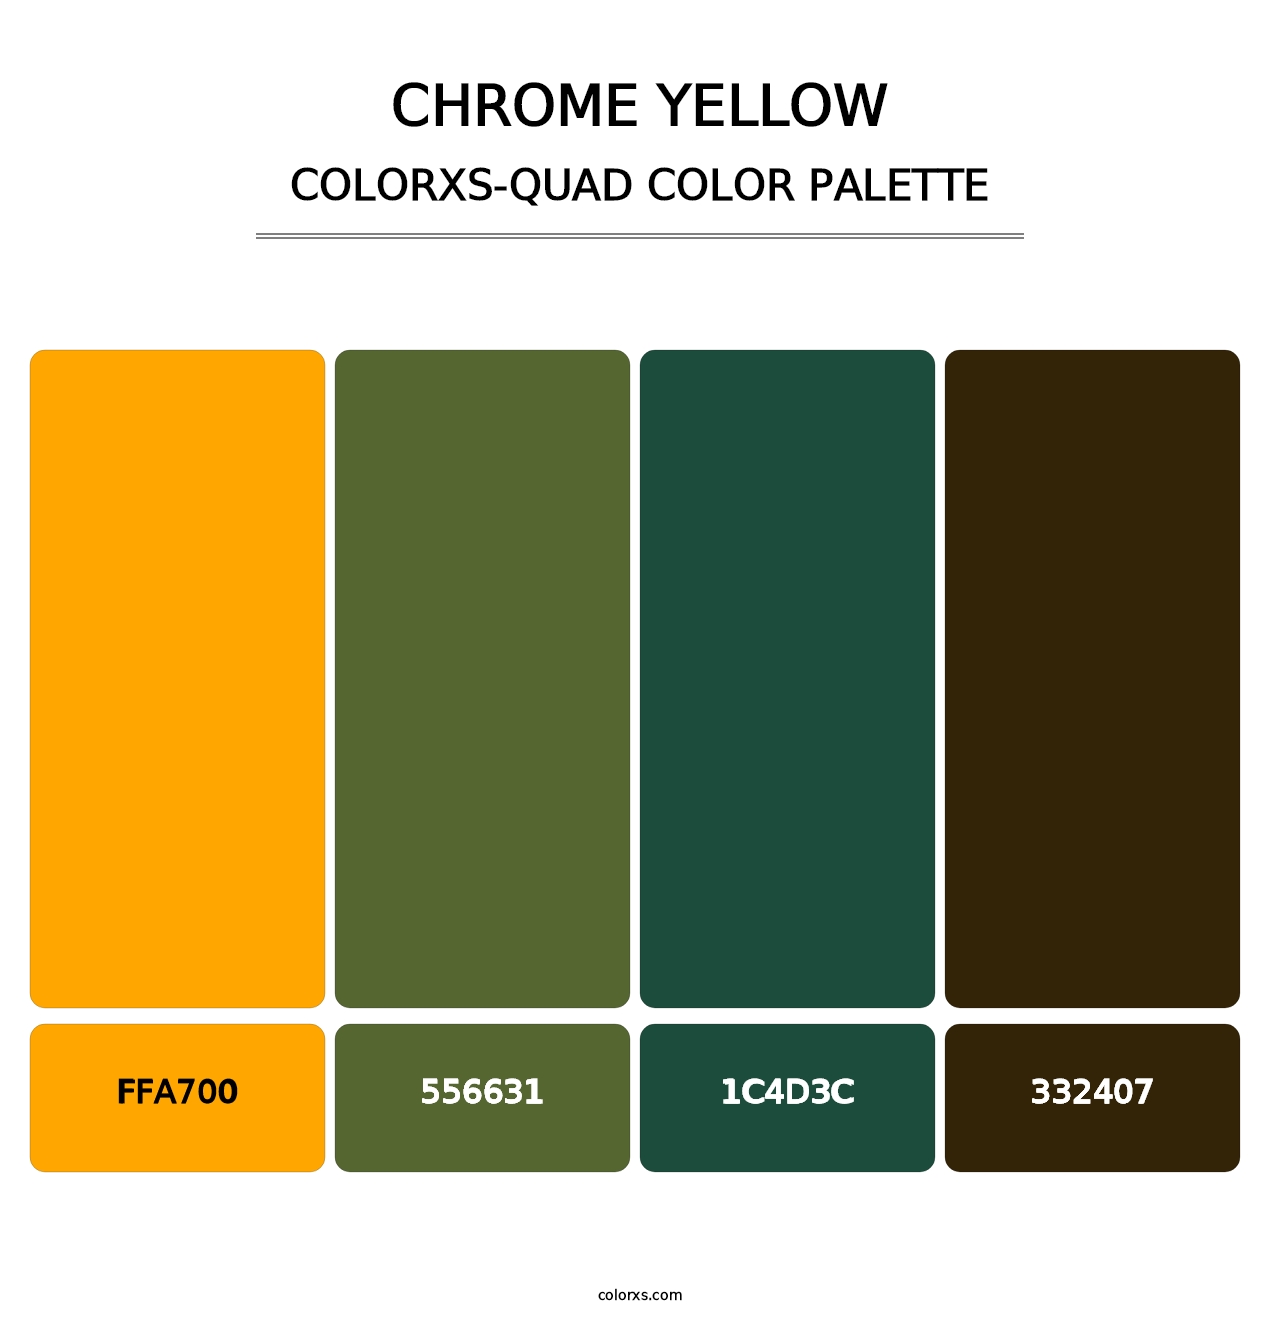 Chrome Yellow - Colorxs Quad Palette